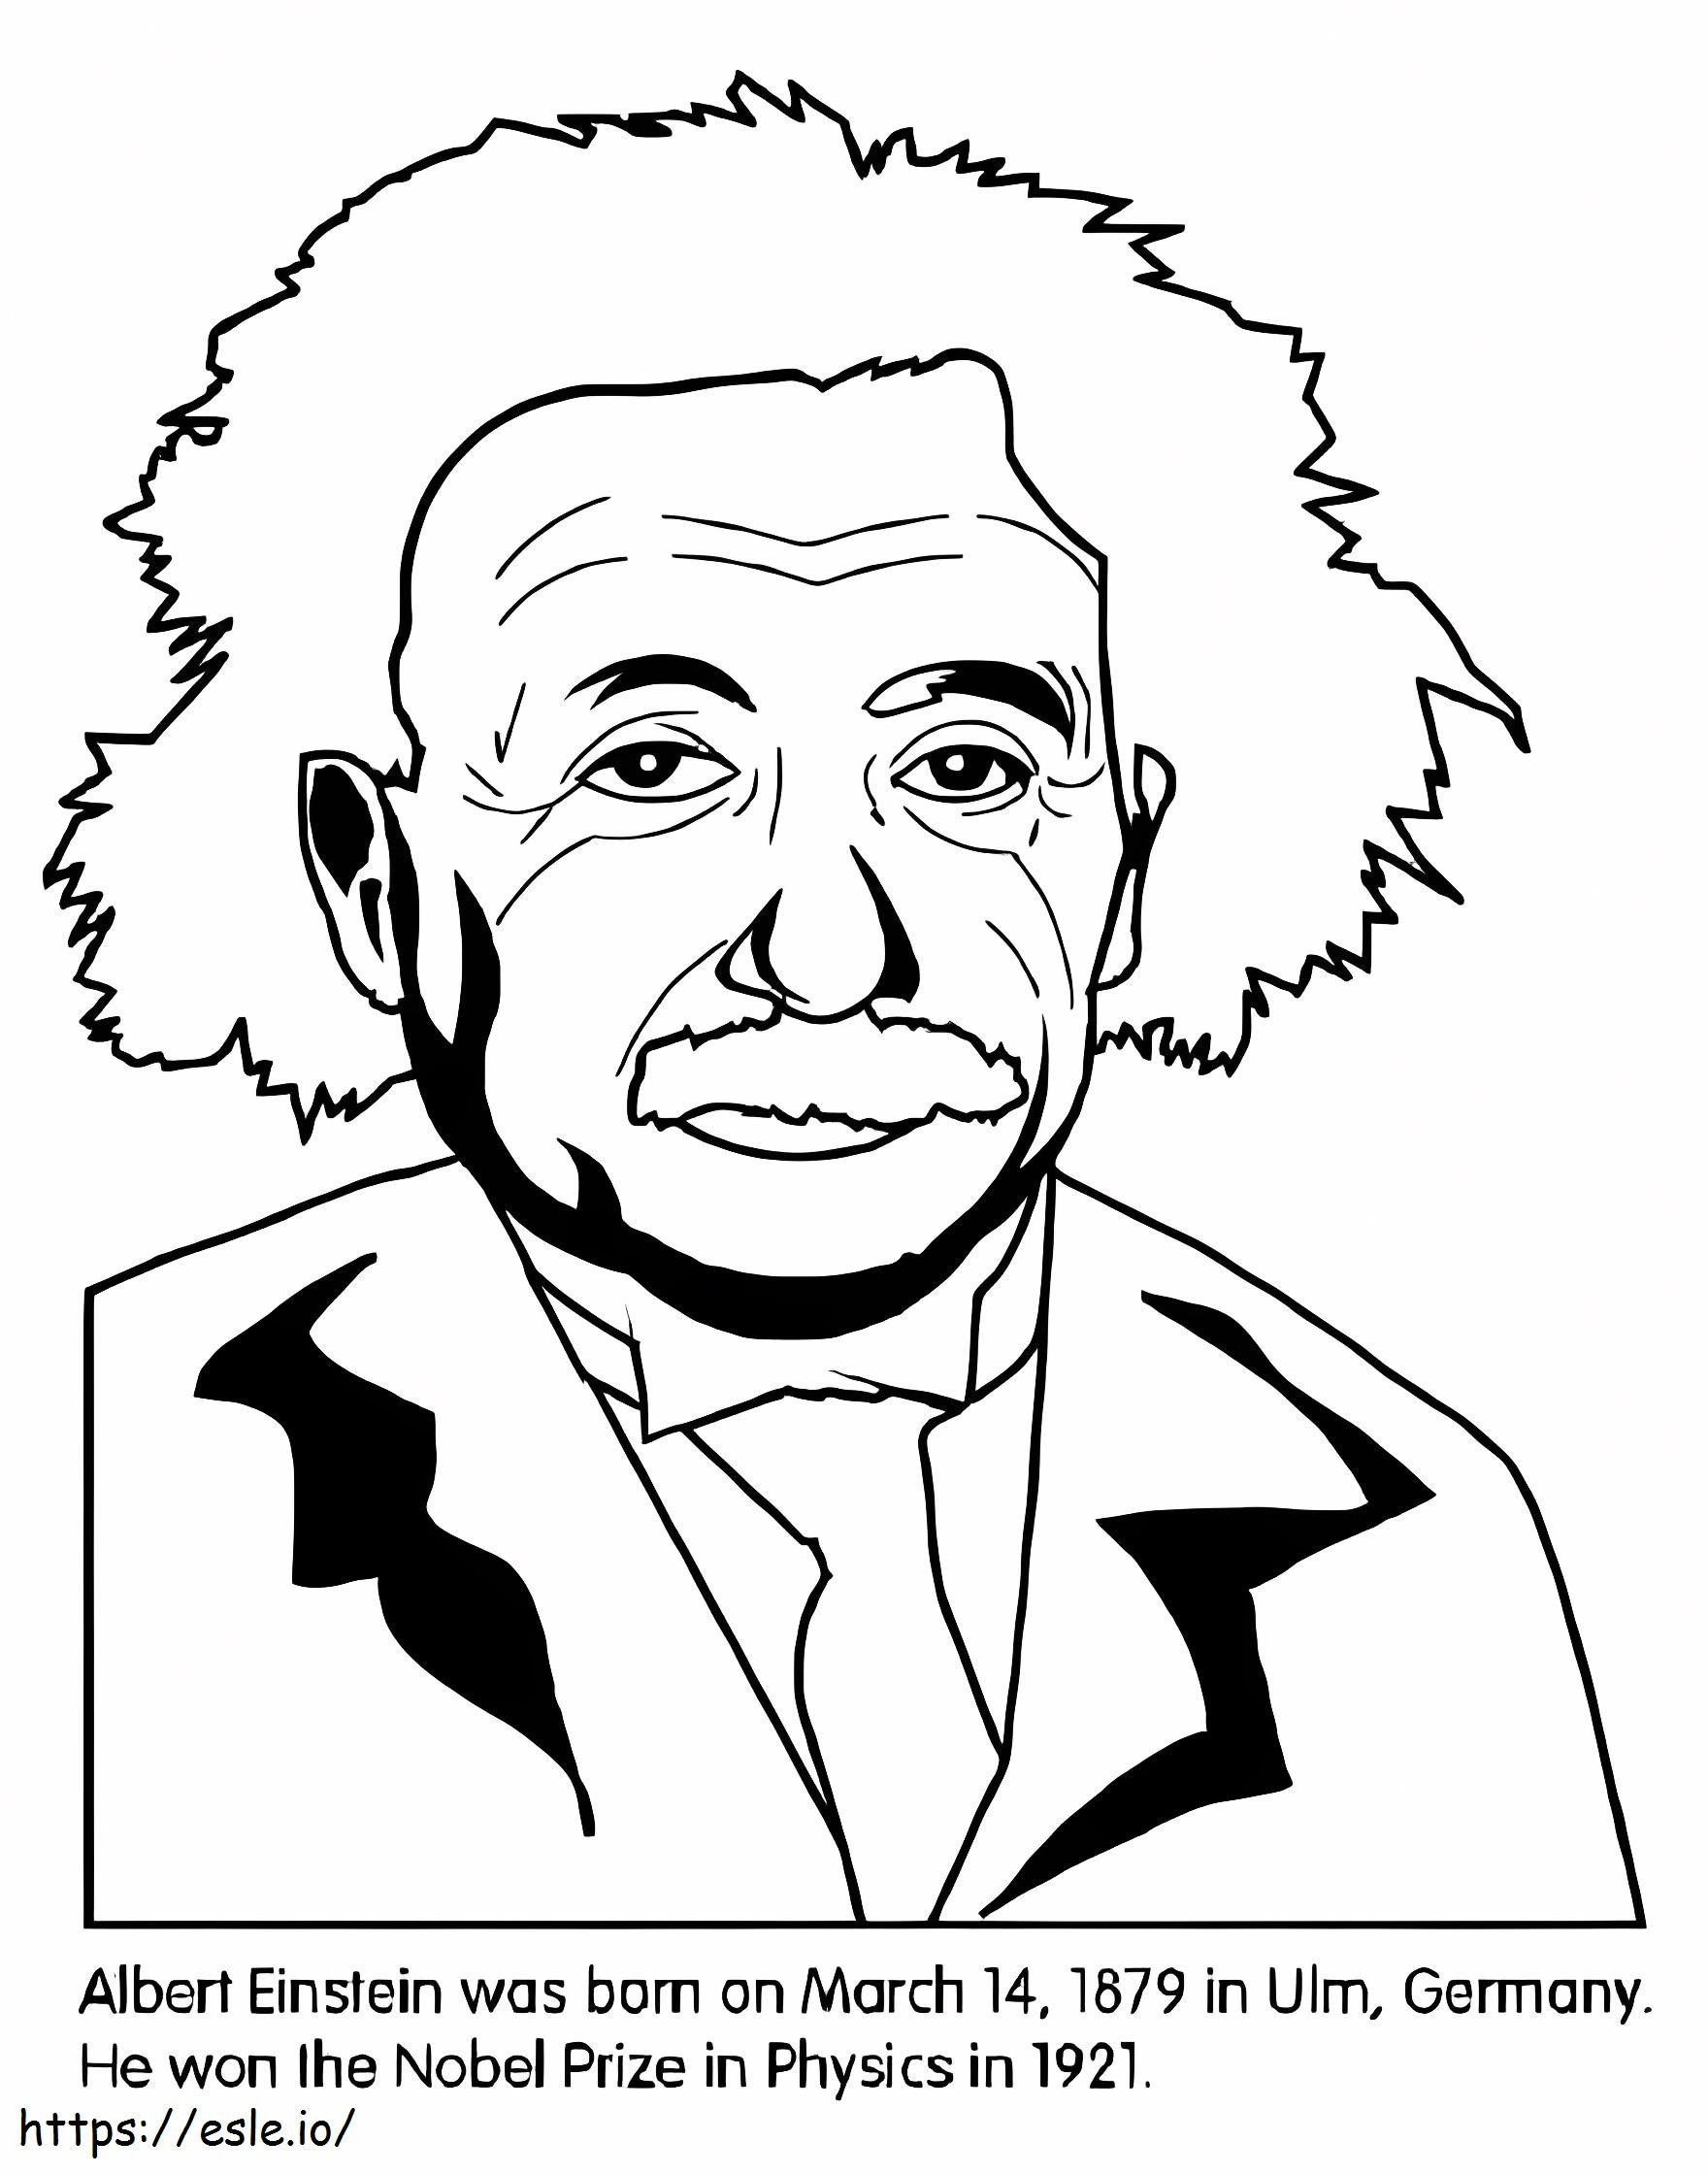 Ücretsiz Yazdırılabilir Albert Einstein boyama